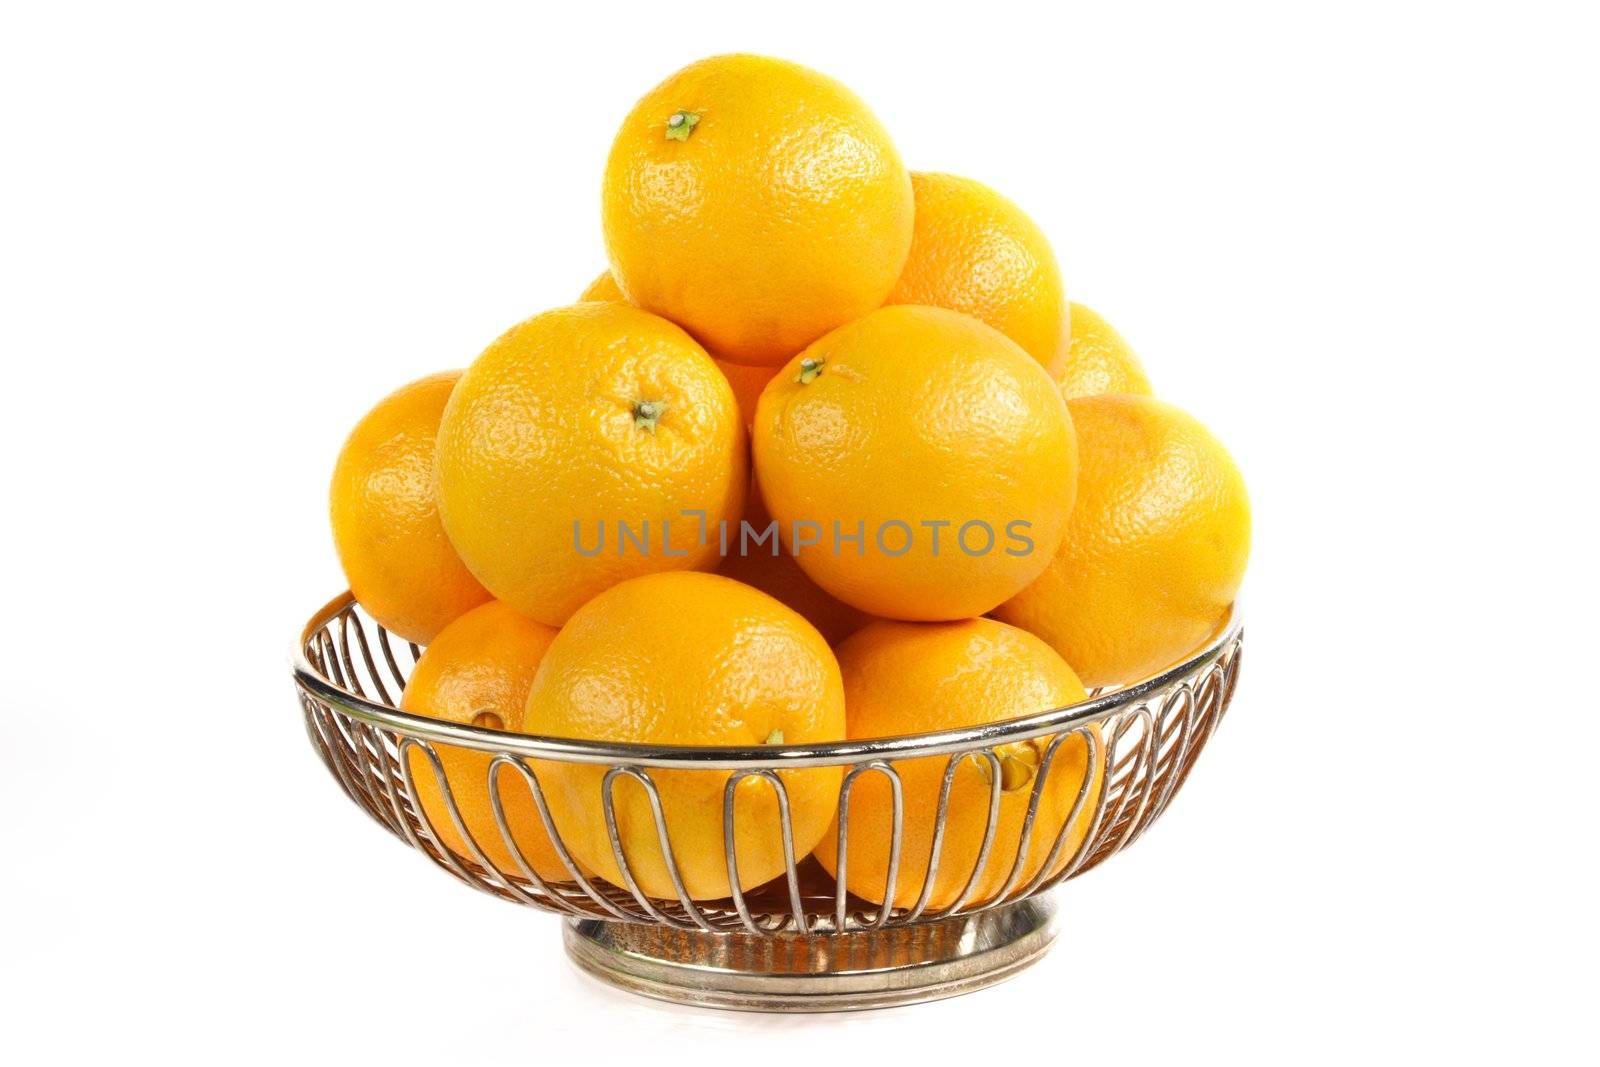 stainless basket full of navel orange